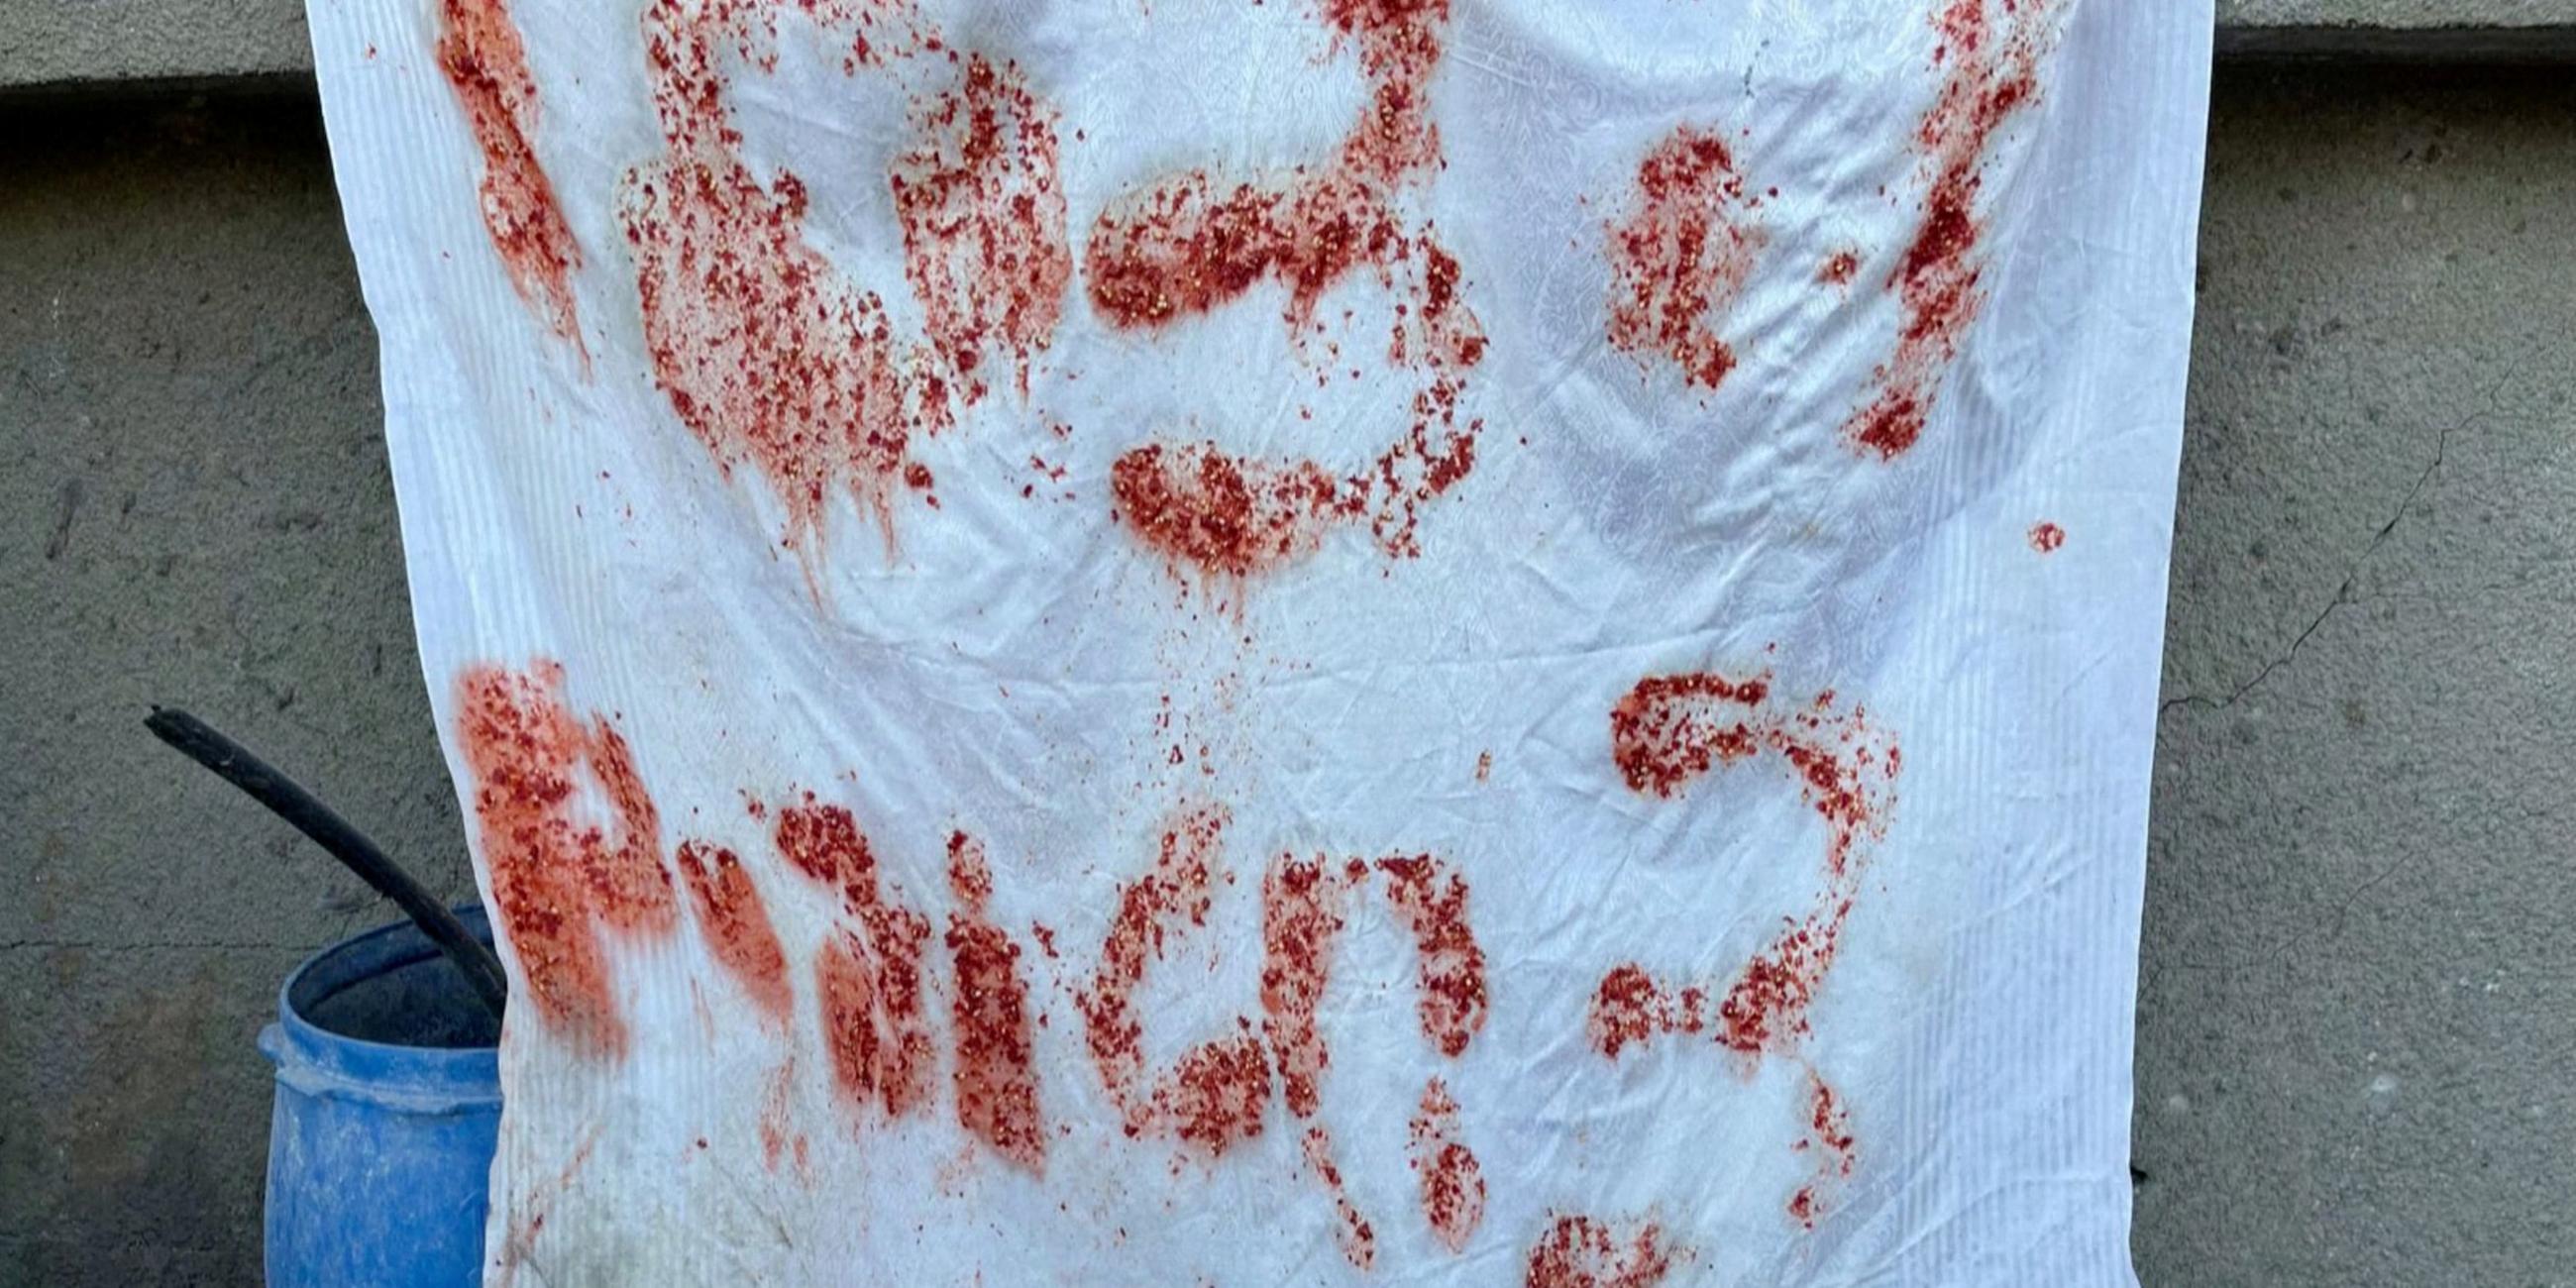 Nach Angaben des israelischen Militärs hingen S.O.S.-Schilder am Versteck der getöteten Geiseln